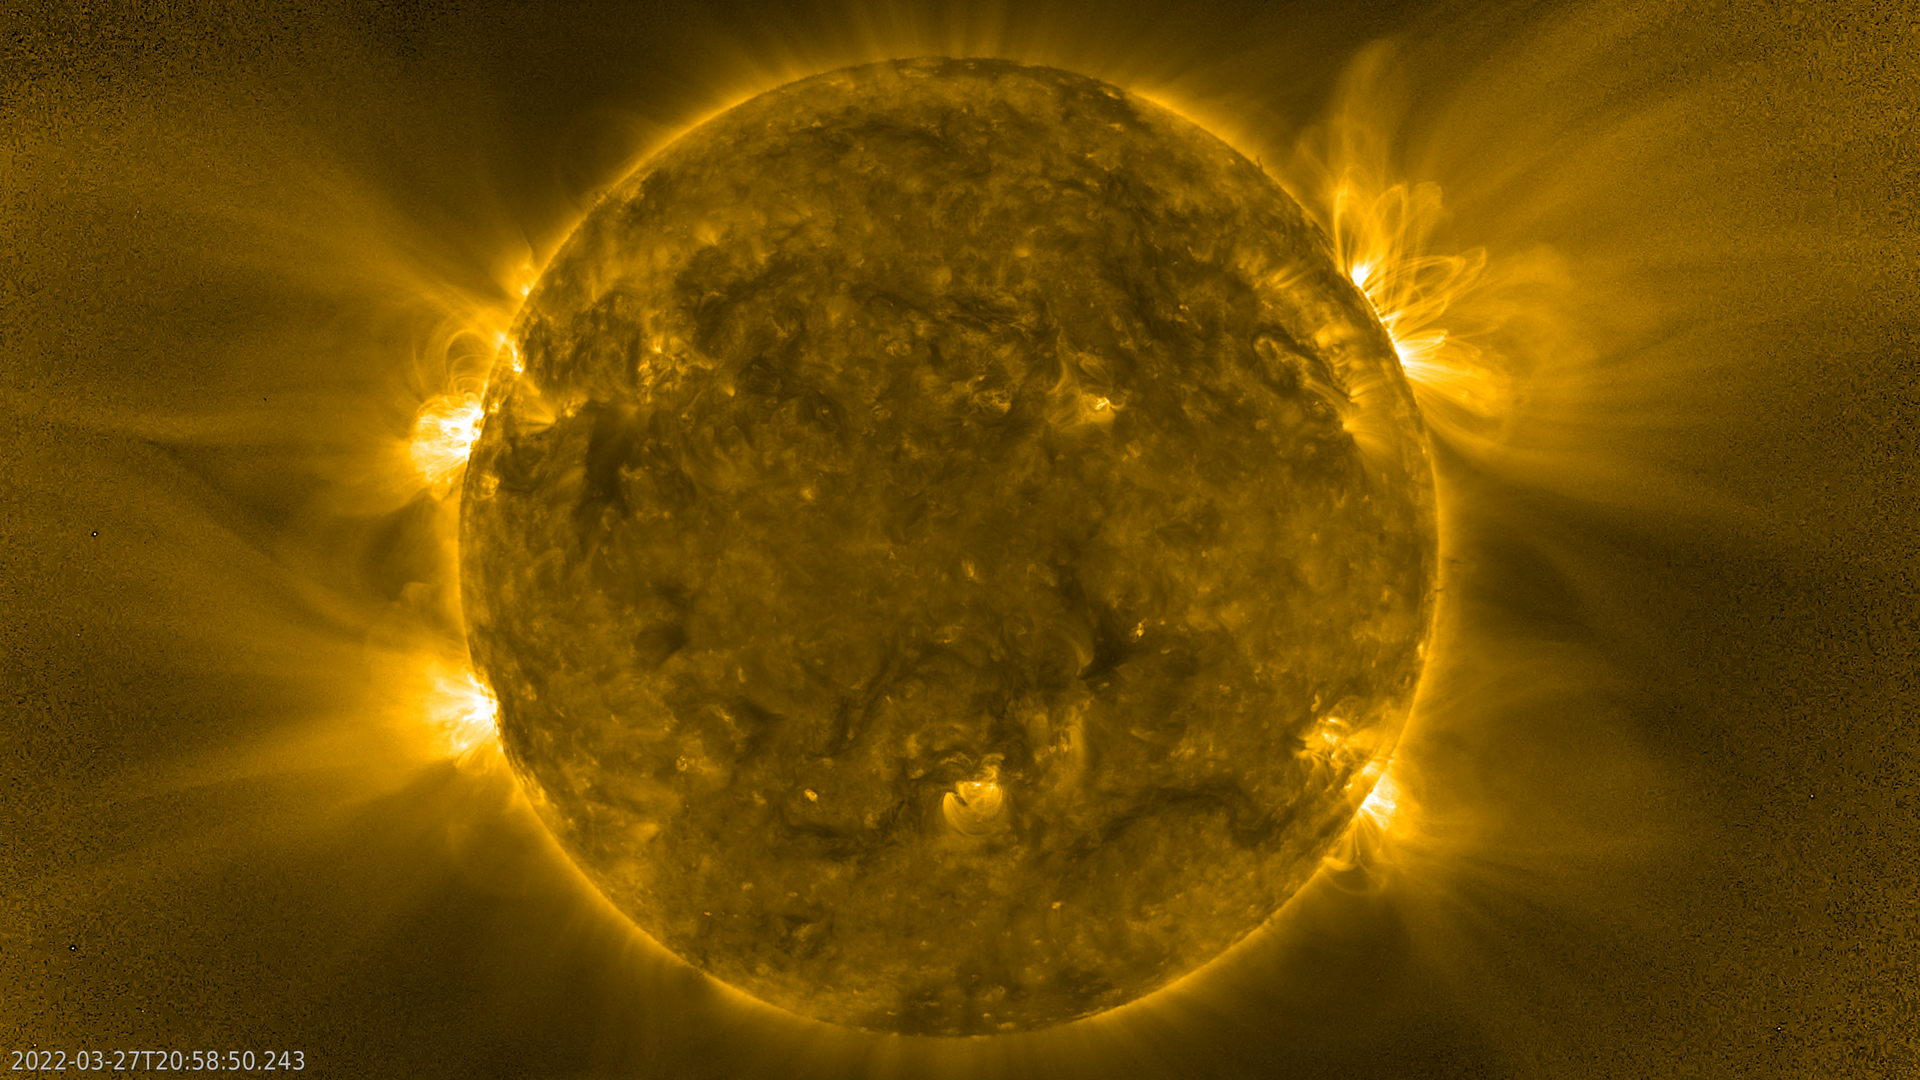 Ηλιακός “σκαντζόχοιρος”: Η αποκάλυψη από τις θεαματικές φωτογραφίες που τράβηξε το διαστημικό σκάφος Solar Orbiter